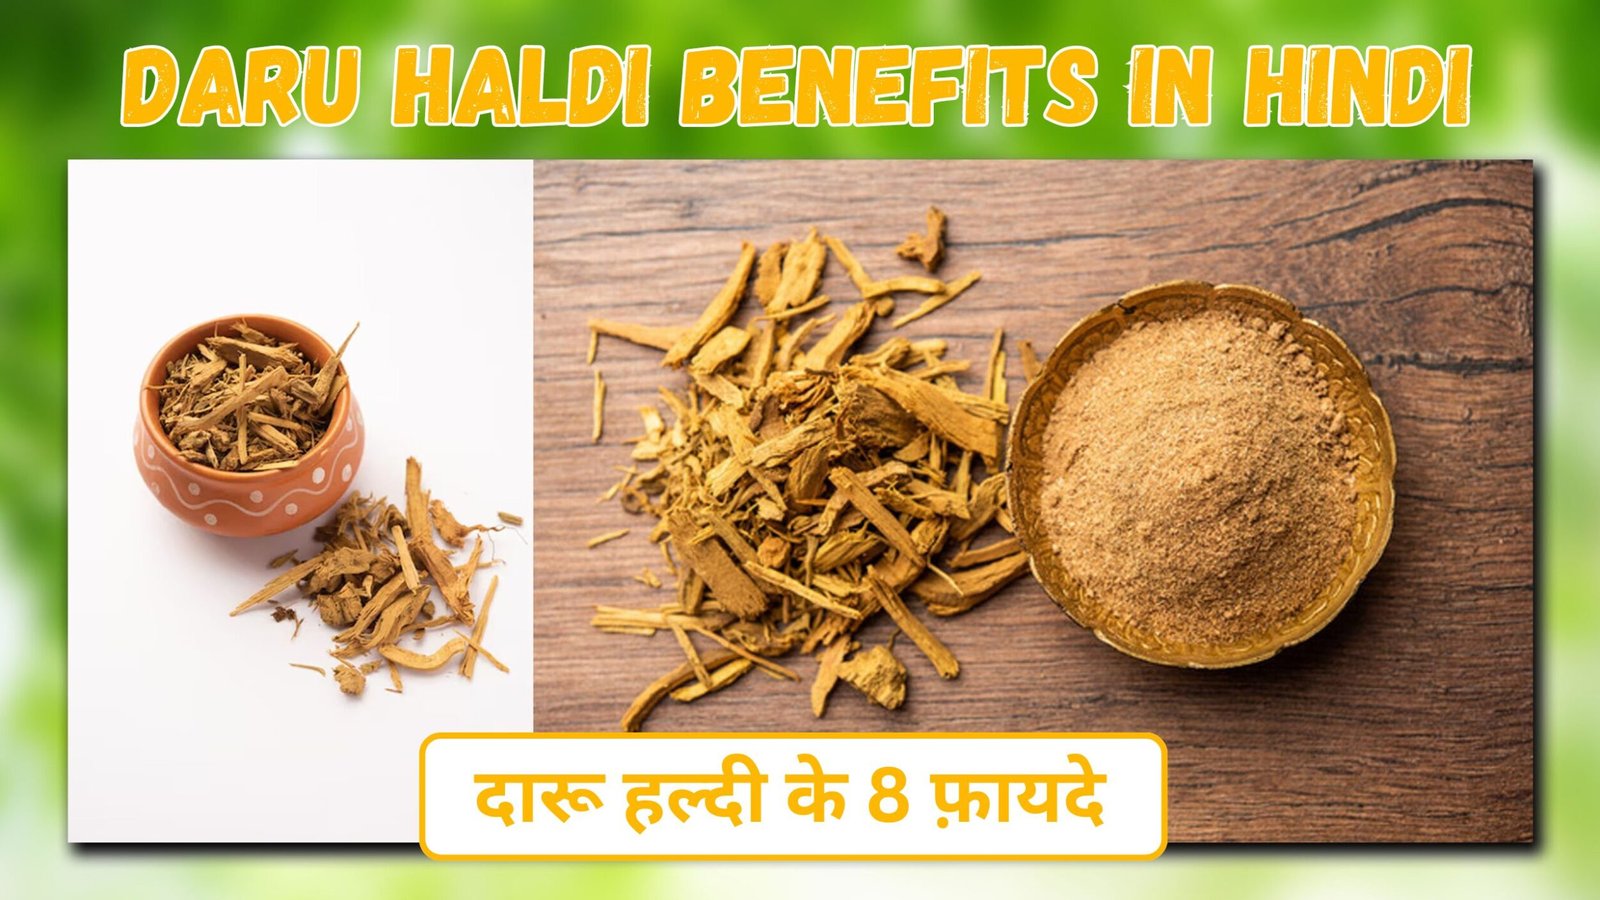 Daru haldi benefits in hindi |दारुहरिद्रा ( दारू हल्दी )के फायदे और उपयोग